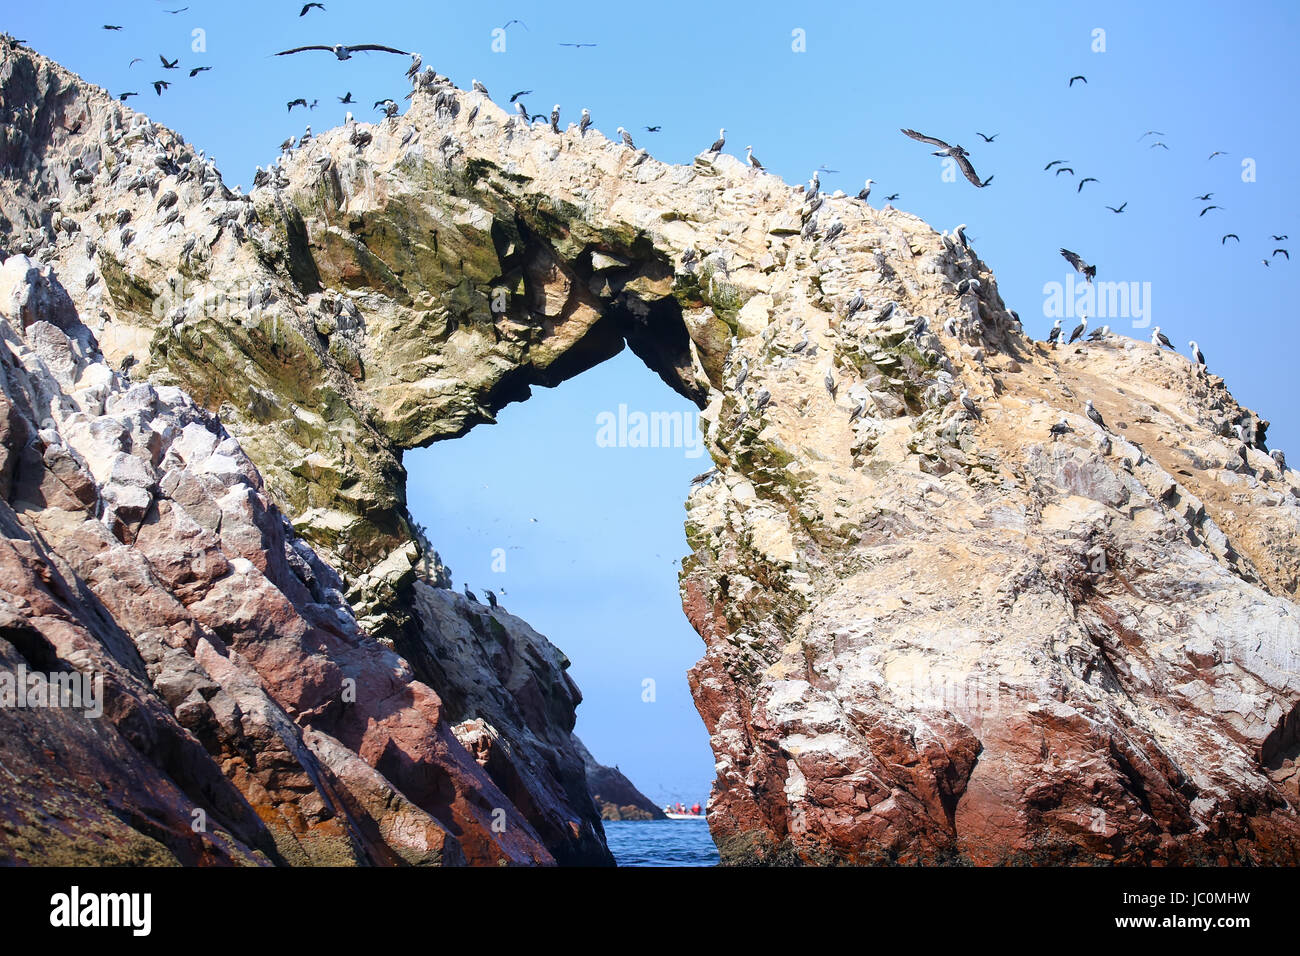 Le formazioni rocciose in Isole Ballestas riserva in Perù. Isole Ballestas sono un importante santuario per la fauna marina Foto Stock